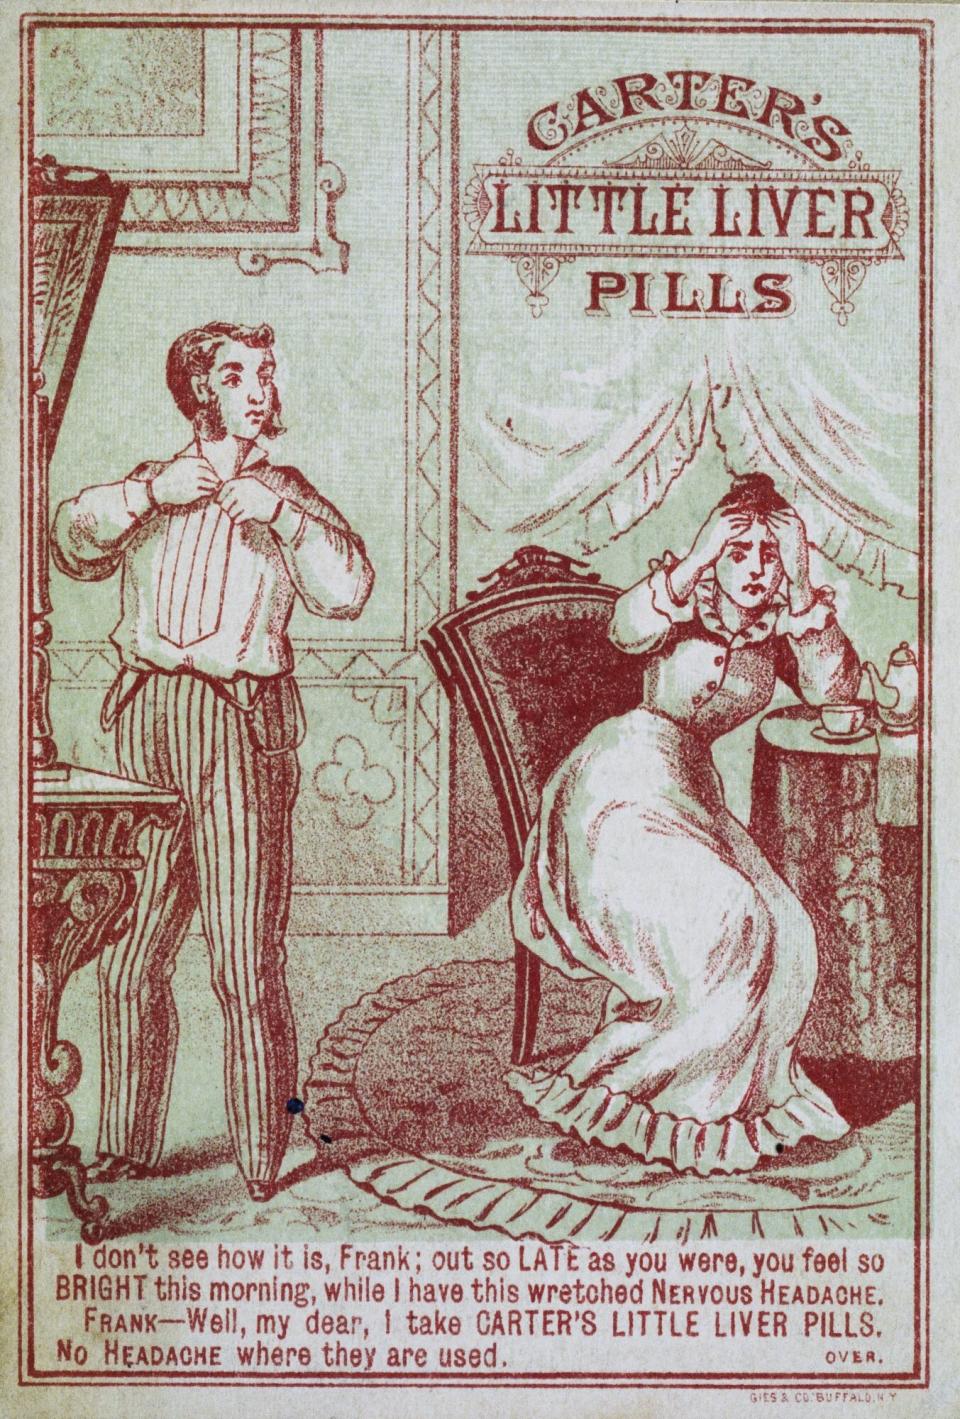 Advertisement for Carter's Little Liver Pills, circa 1900